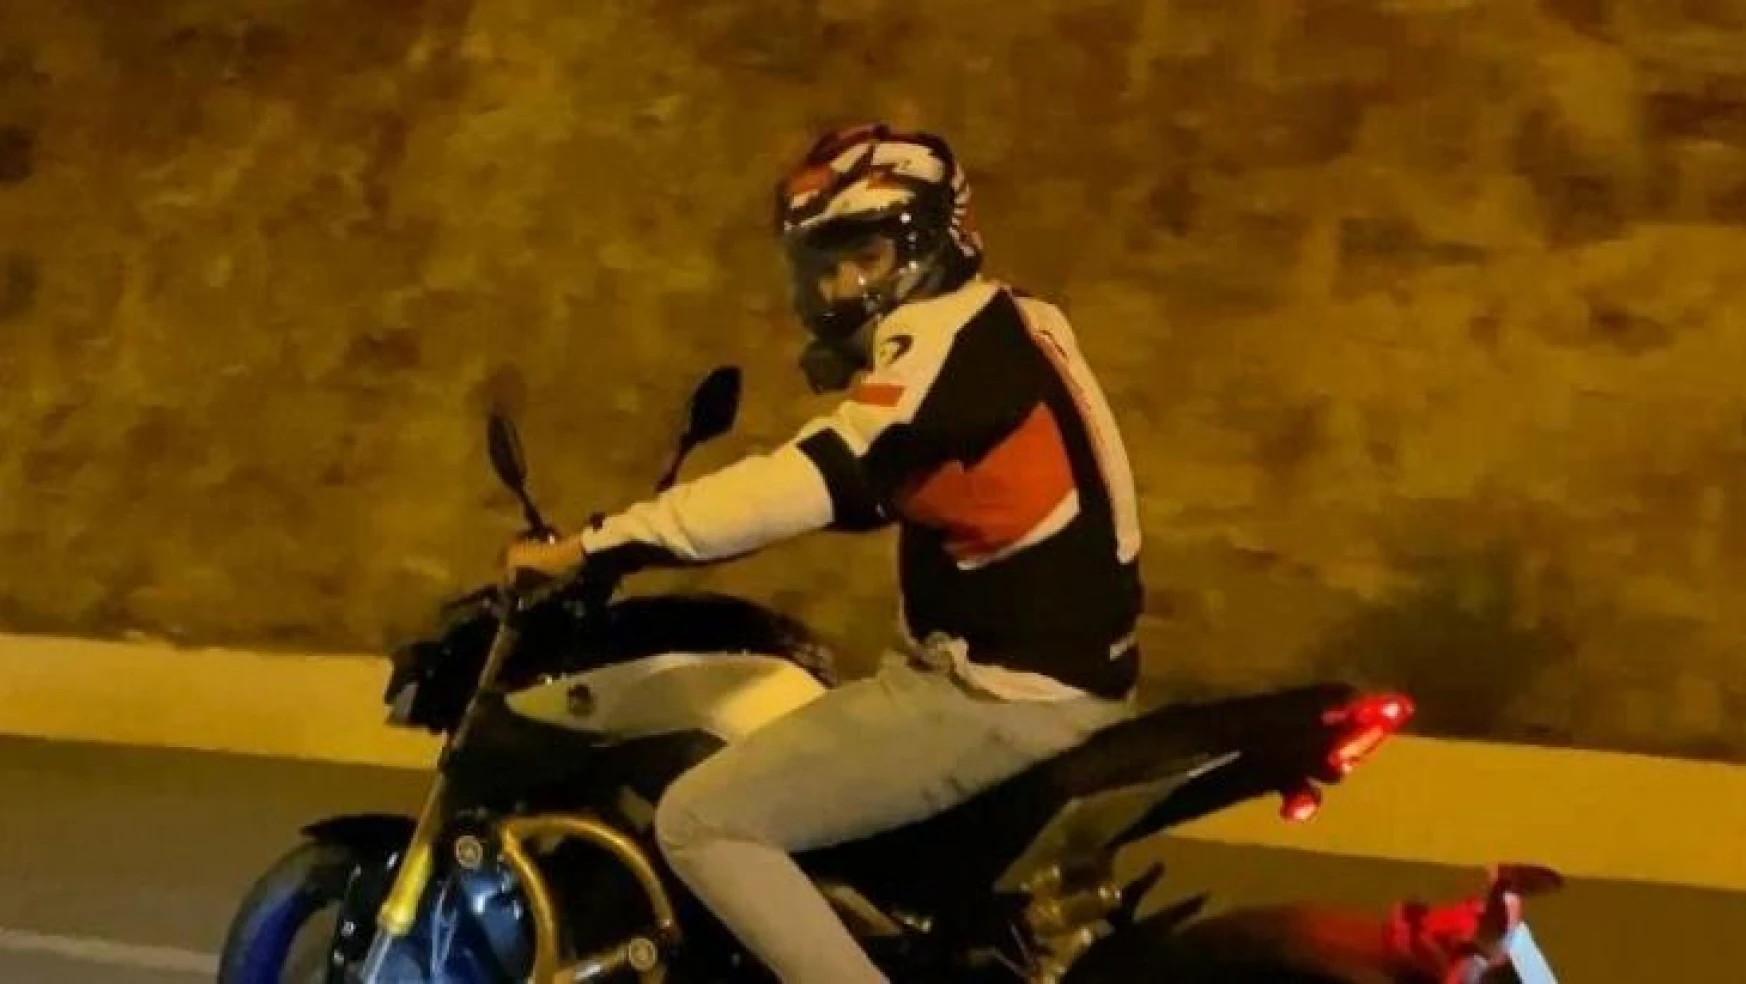 Antalya'da motosiklet kazaları: 2 ölü